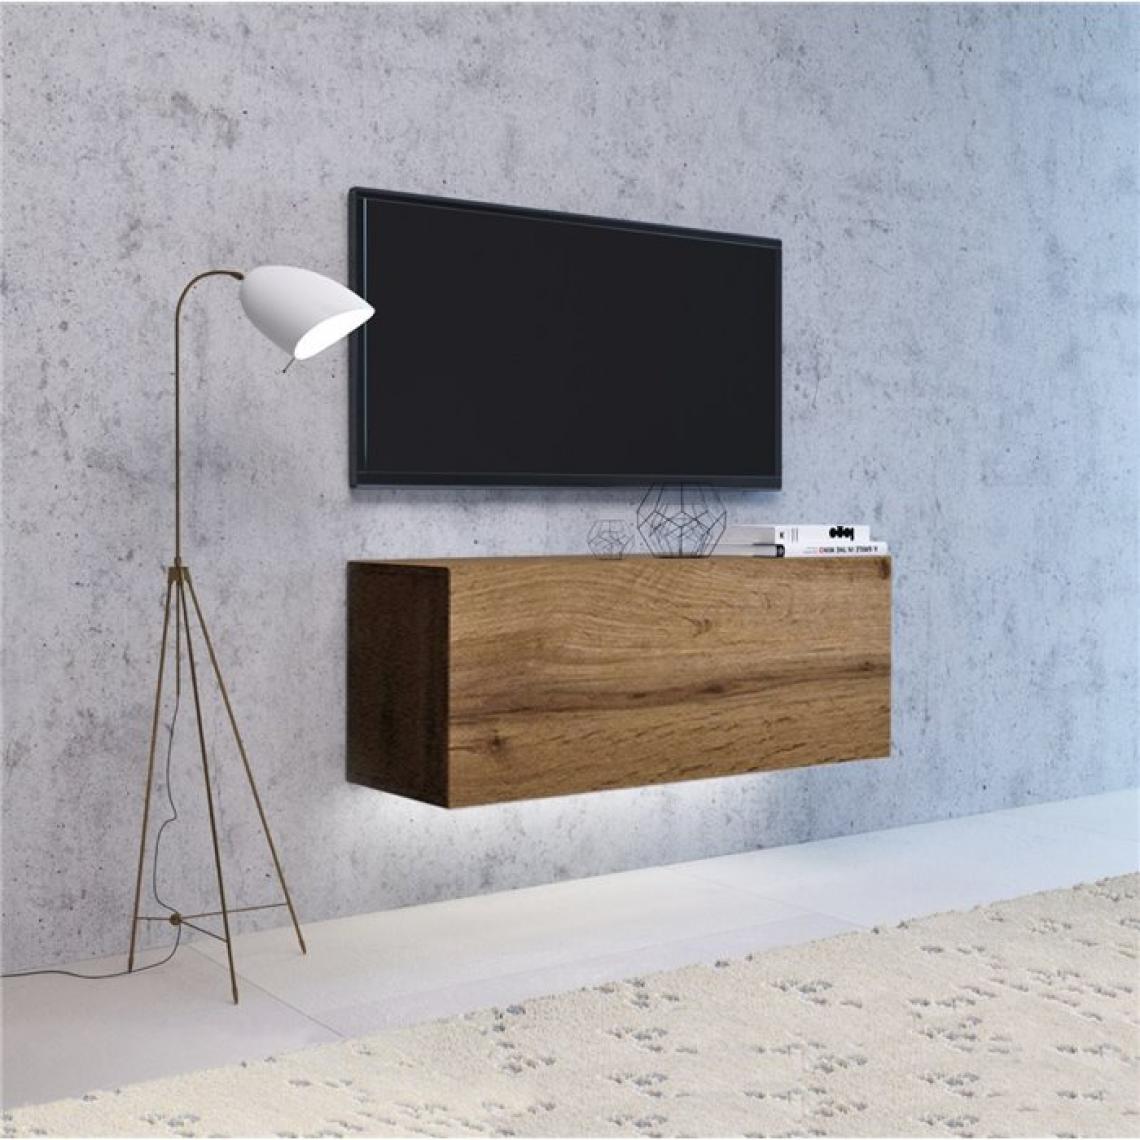 Hucoco - VIVIO - Meuble TV à suspendre avec LED salon/séjour - 140x40x38 cm - Meuble télévision avec rangements - Aspect bois - Chêne - Meubles TV, Hi-Fi